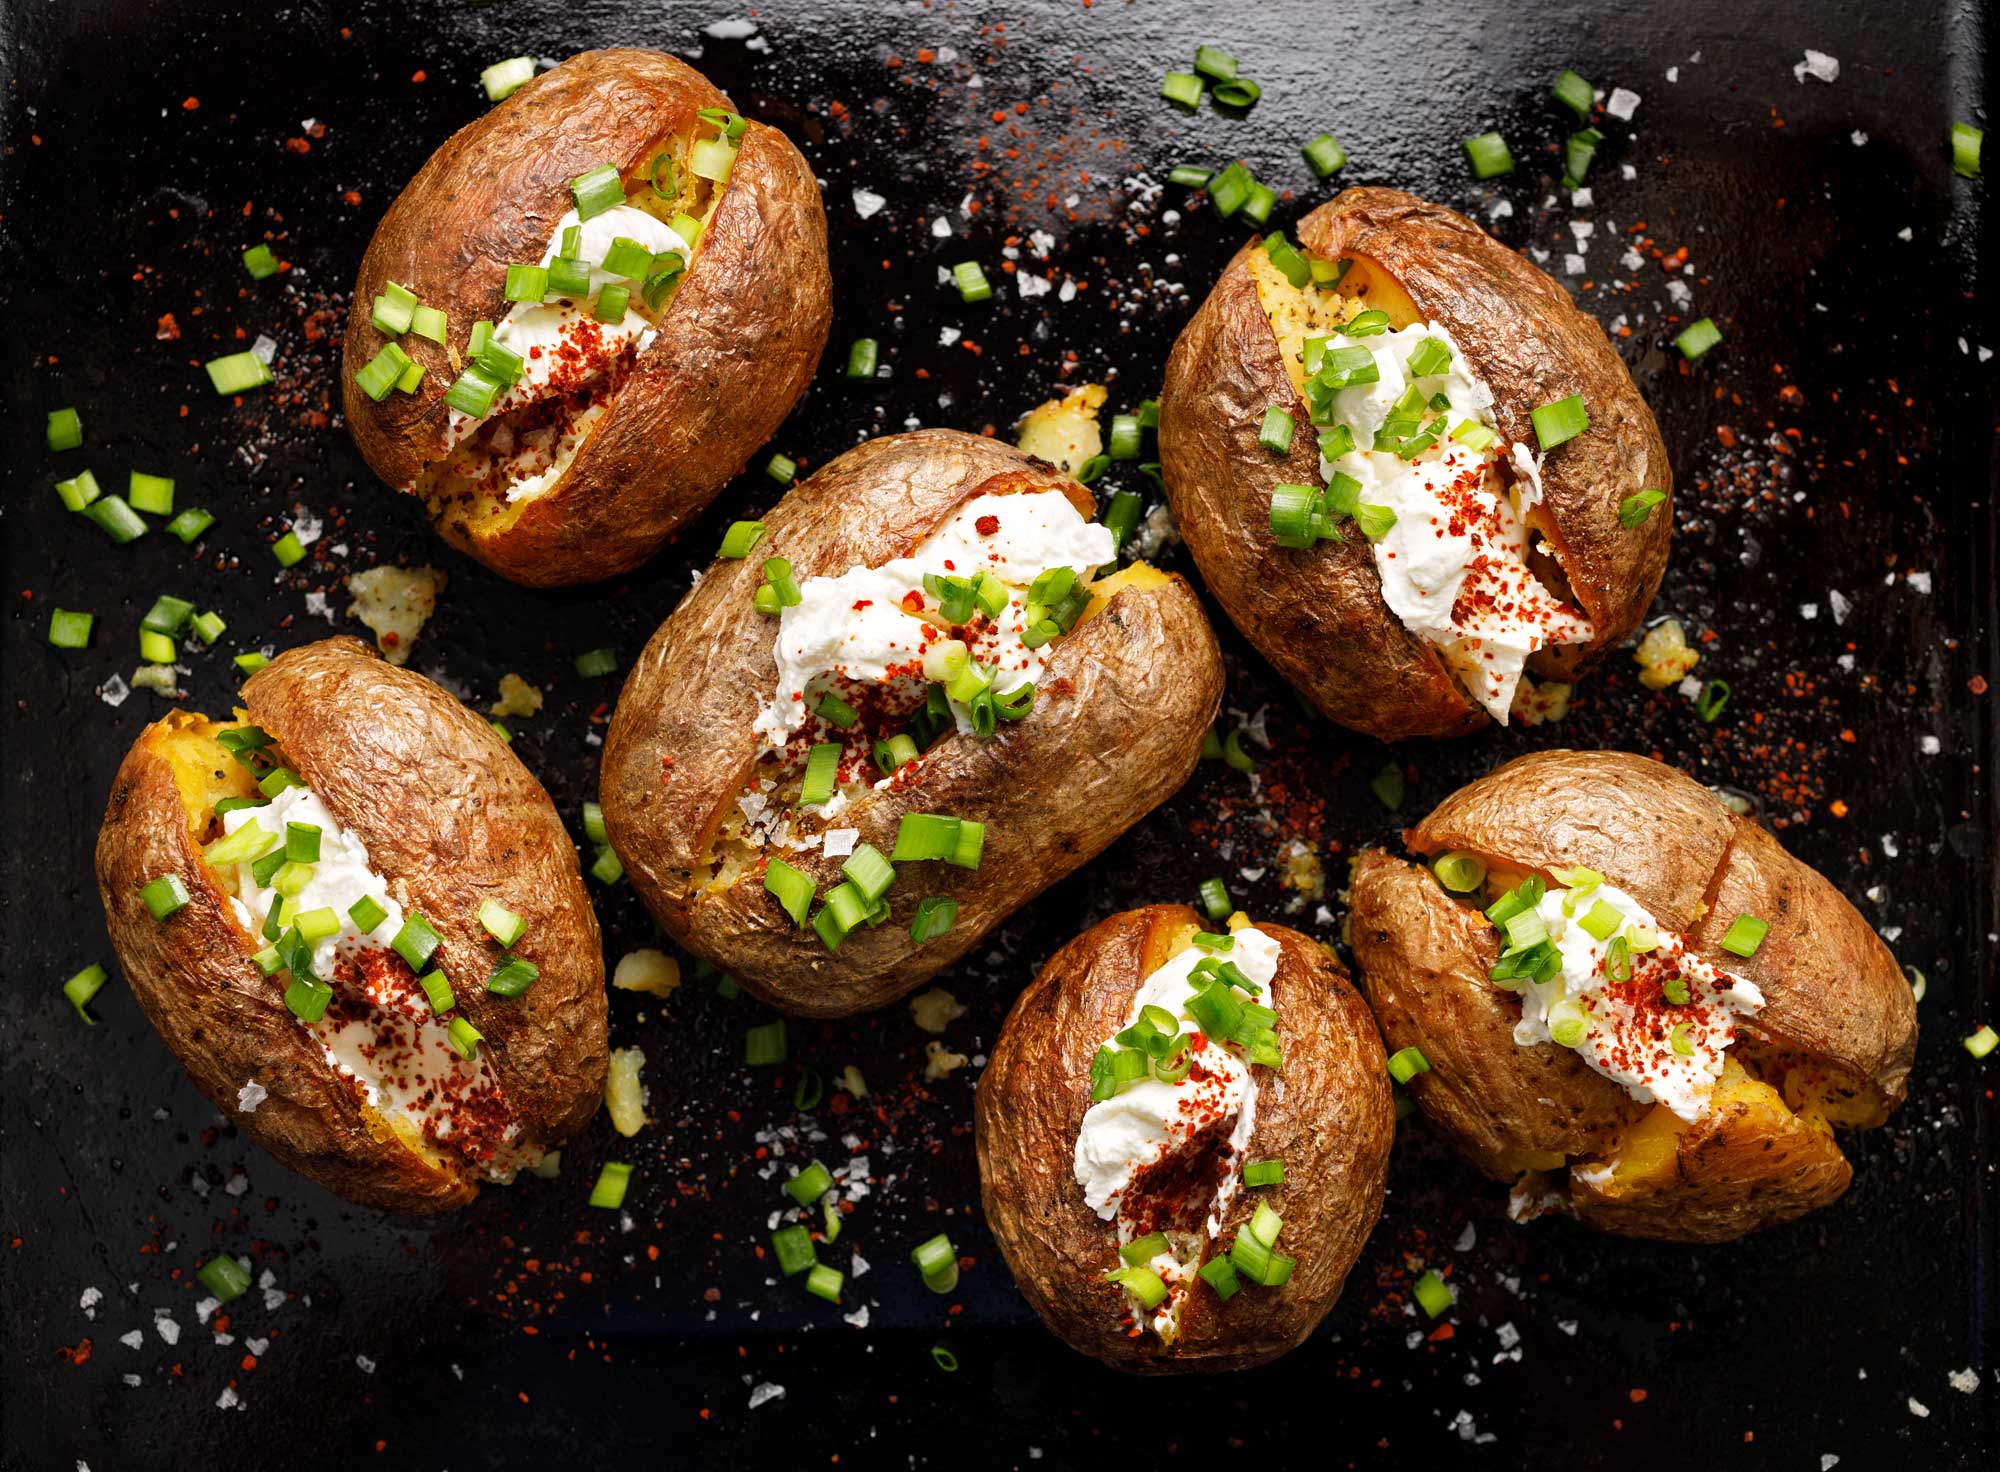 Gepofte aardappel met kruidenkwark